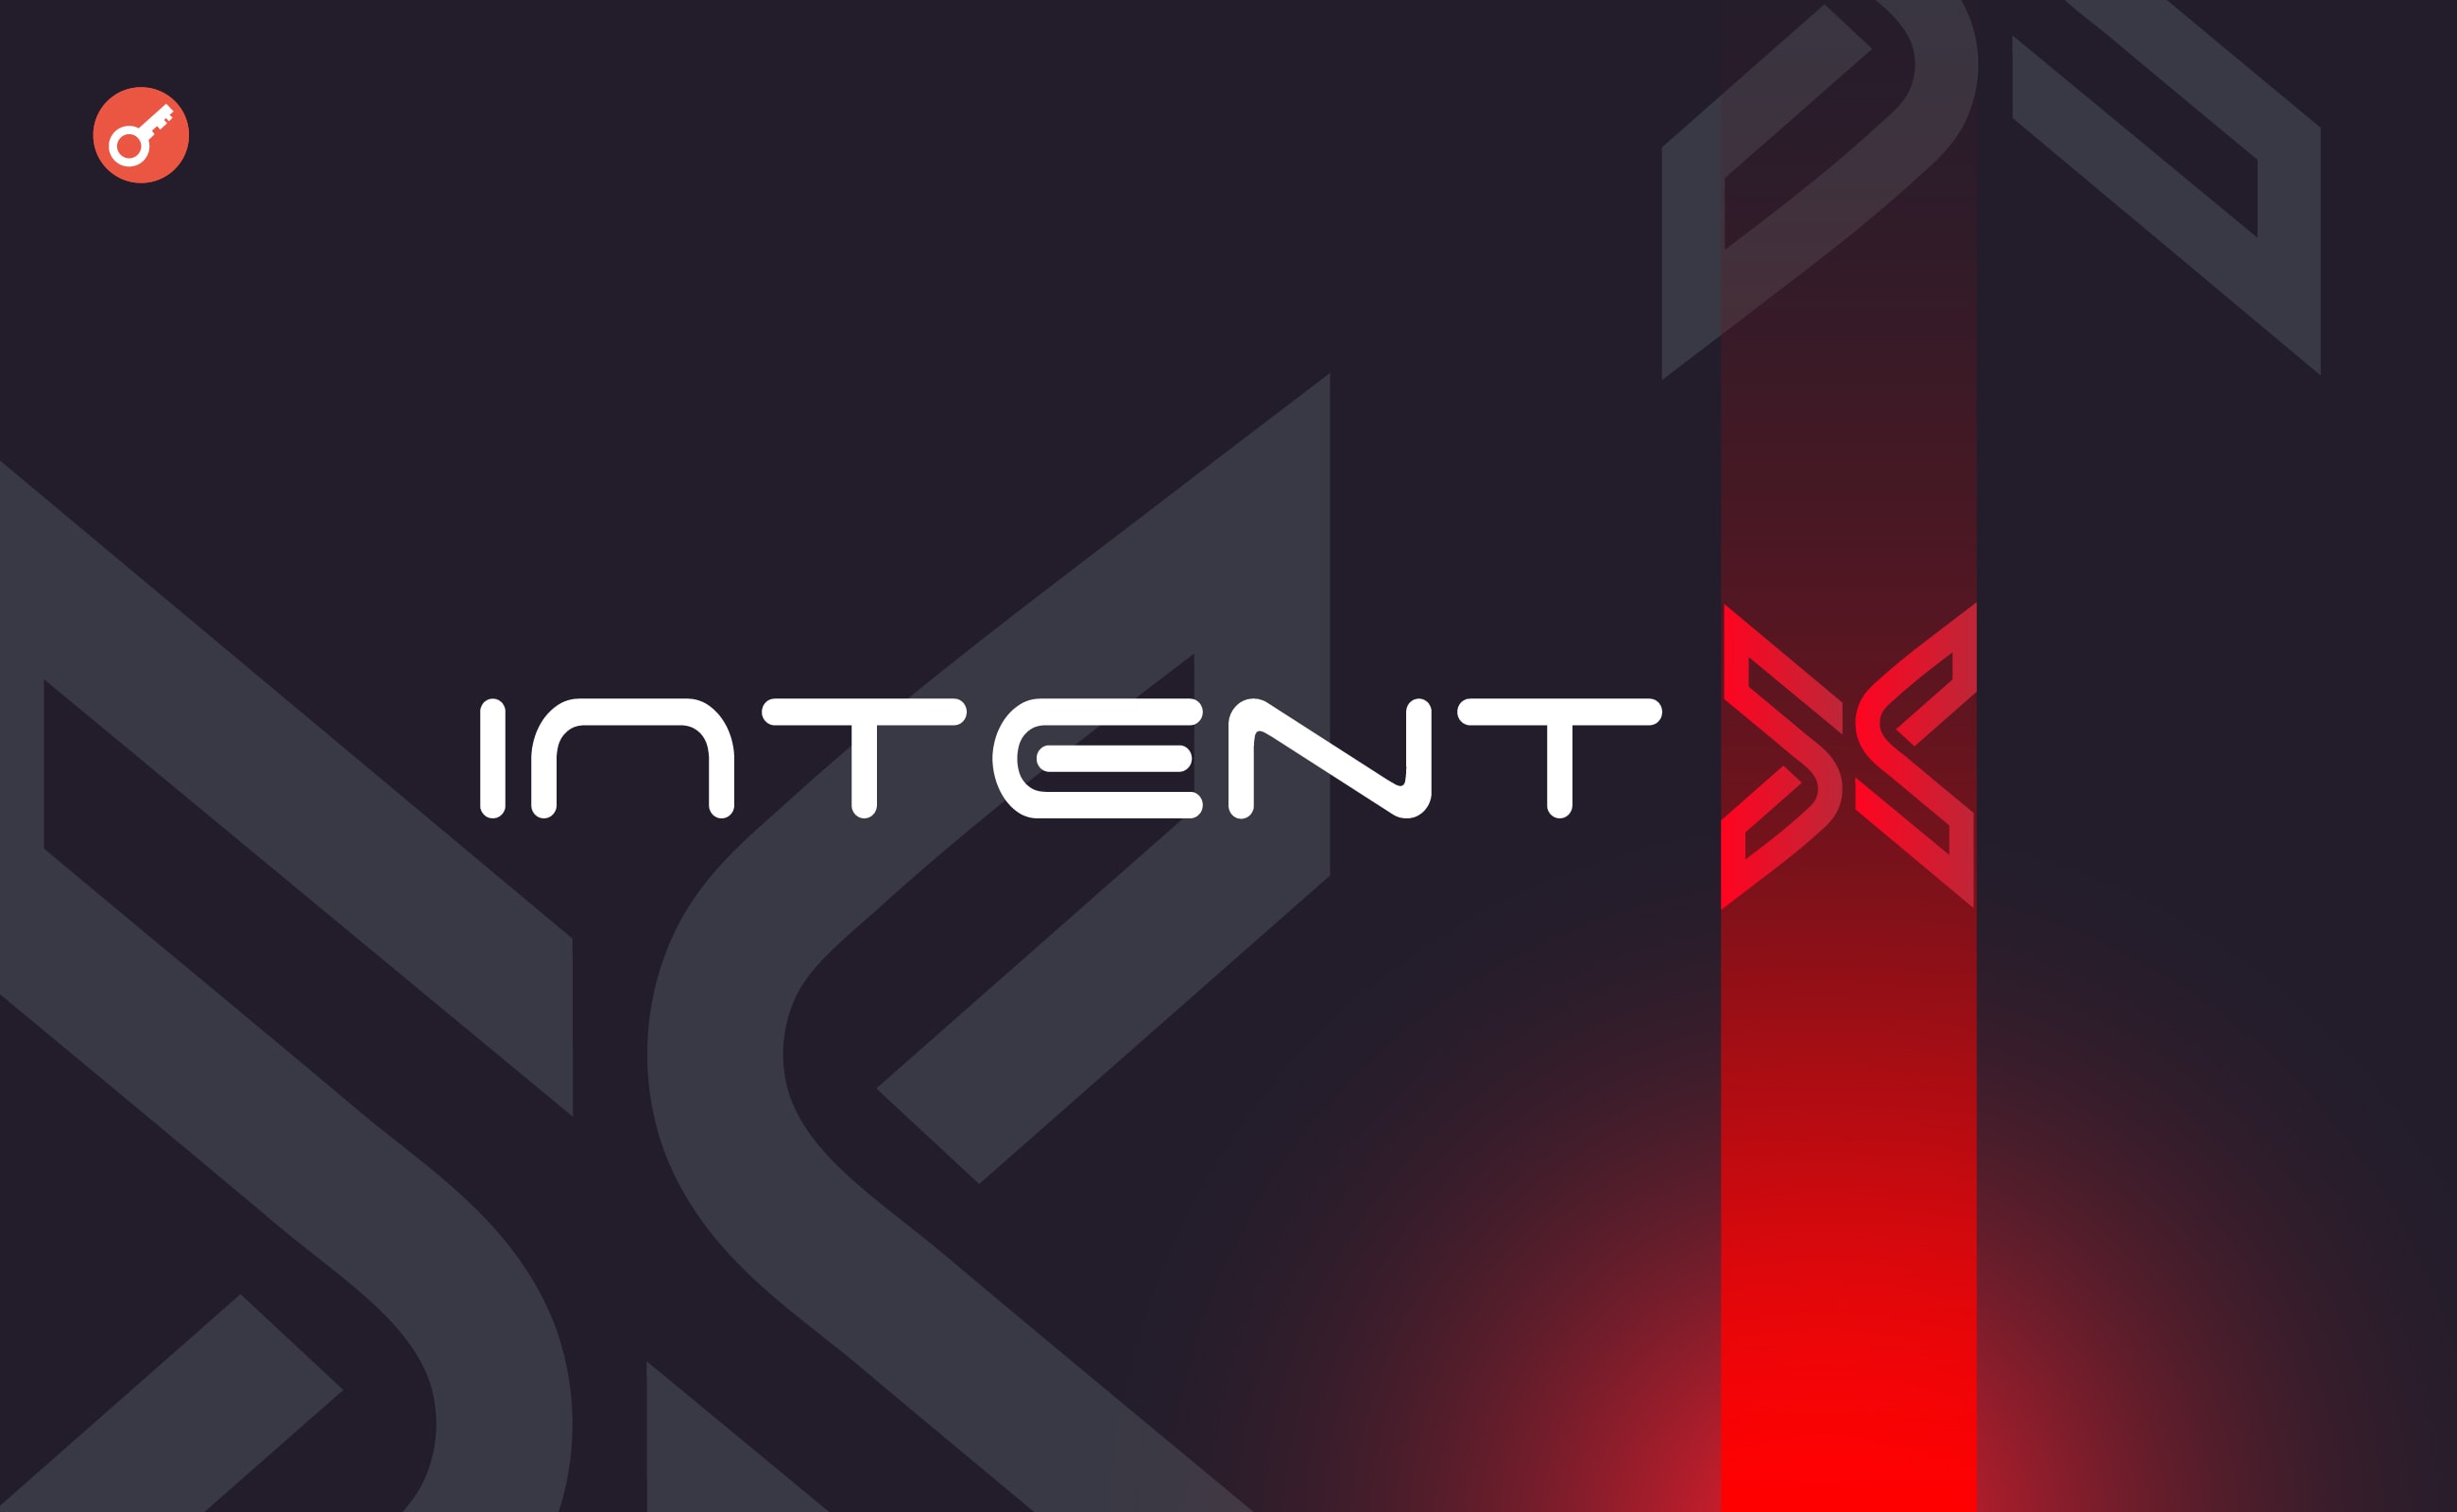 IntentX залучила $1,8 млн інвестицій. Головний колаж новини.